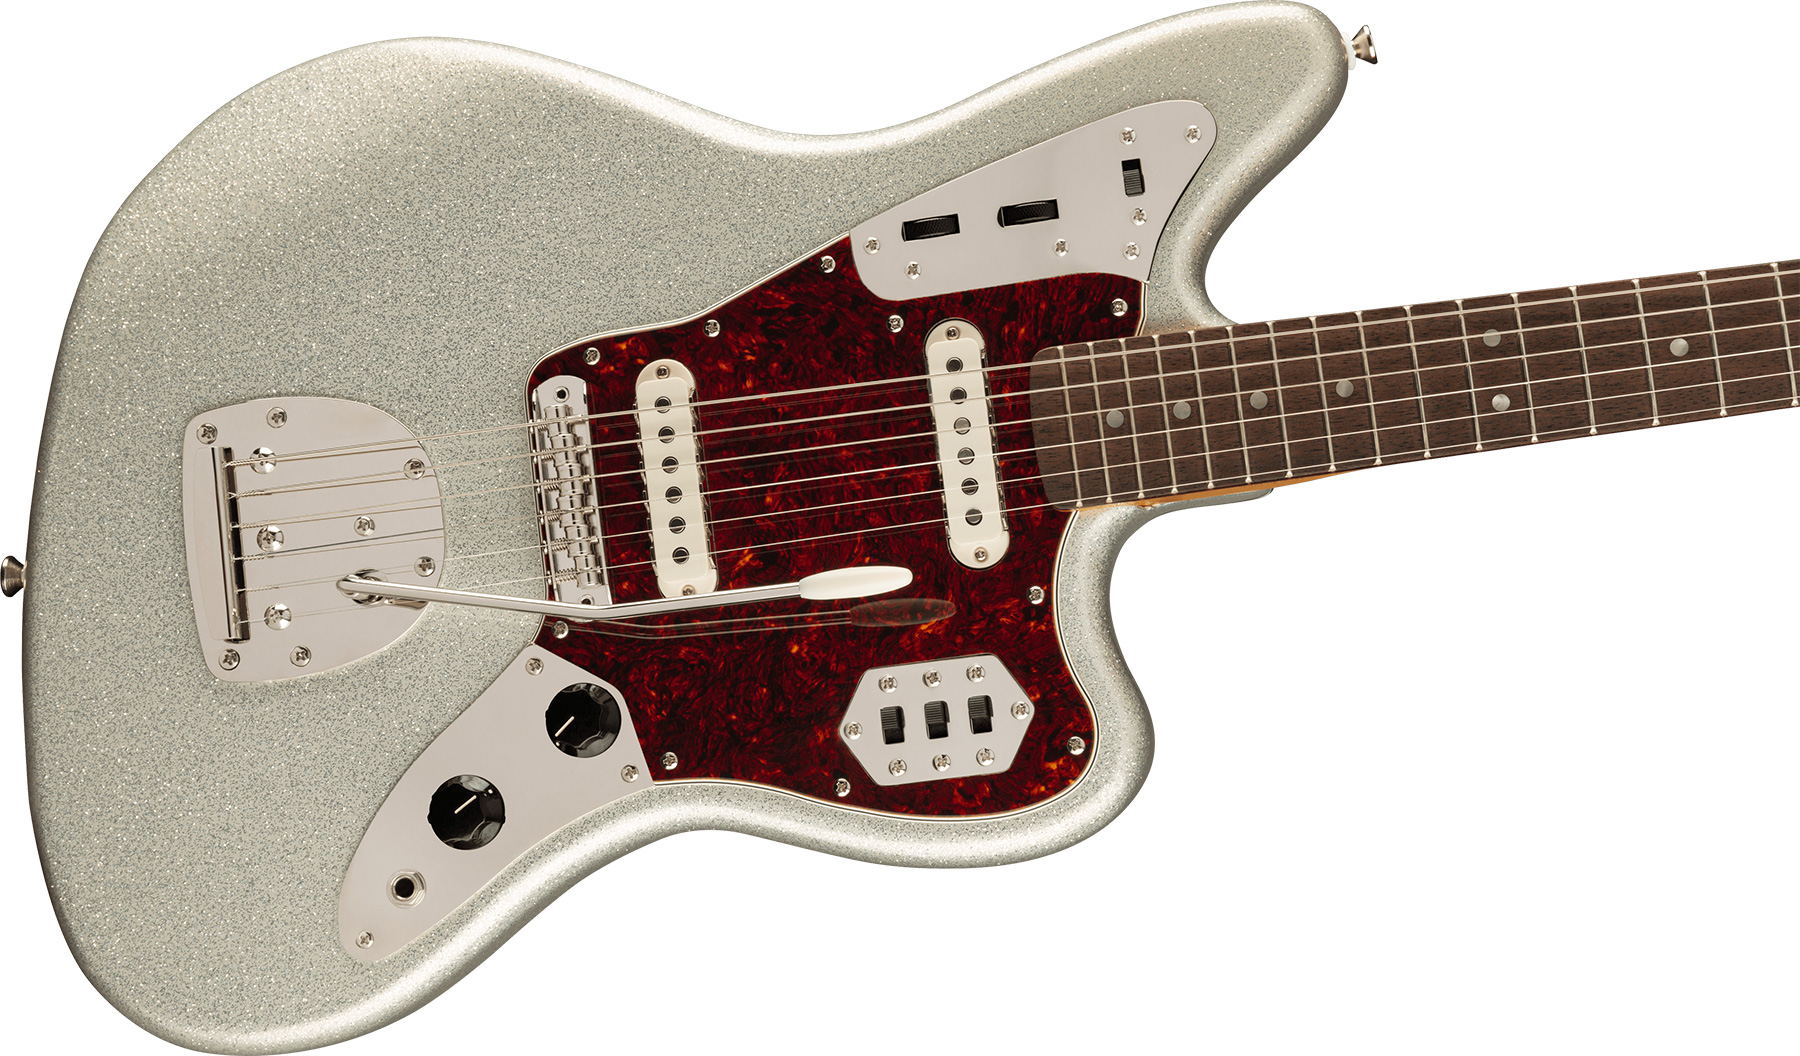 Squier Jaguar 60s Classic Vibe Fsr Ltd 2s Trem Lau - Silver Sparkle Matching Headstock - Retro-Rock-E-Gitarre - Variation 2